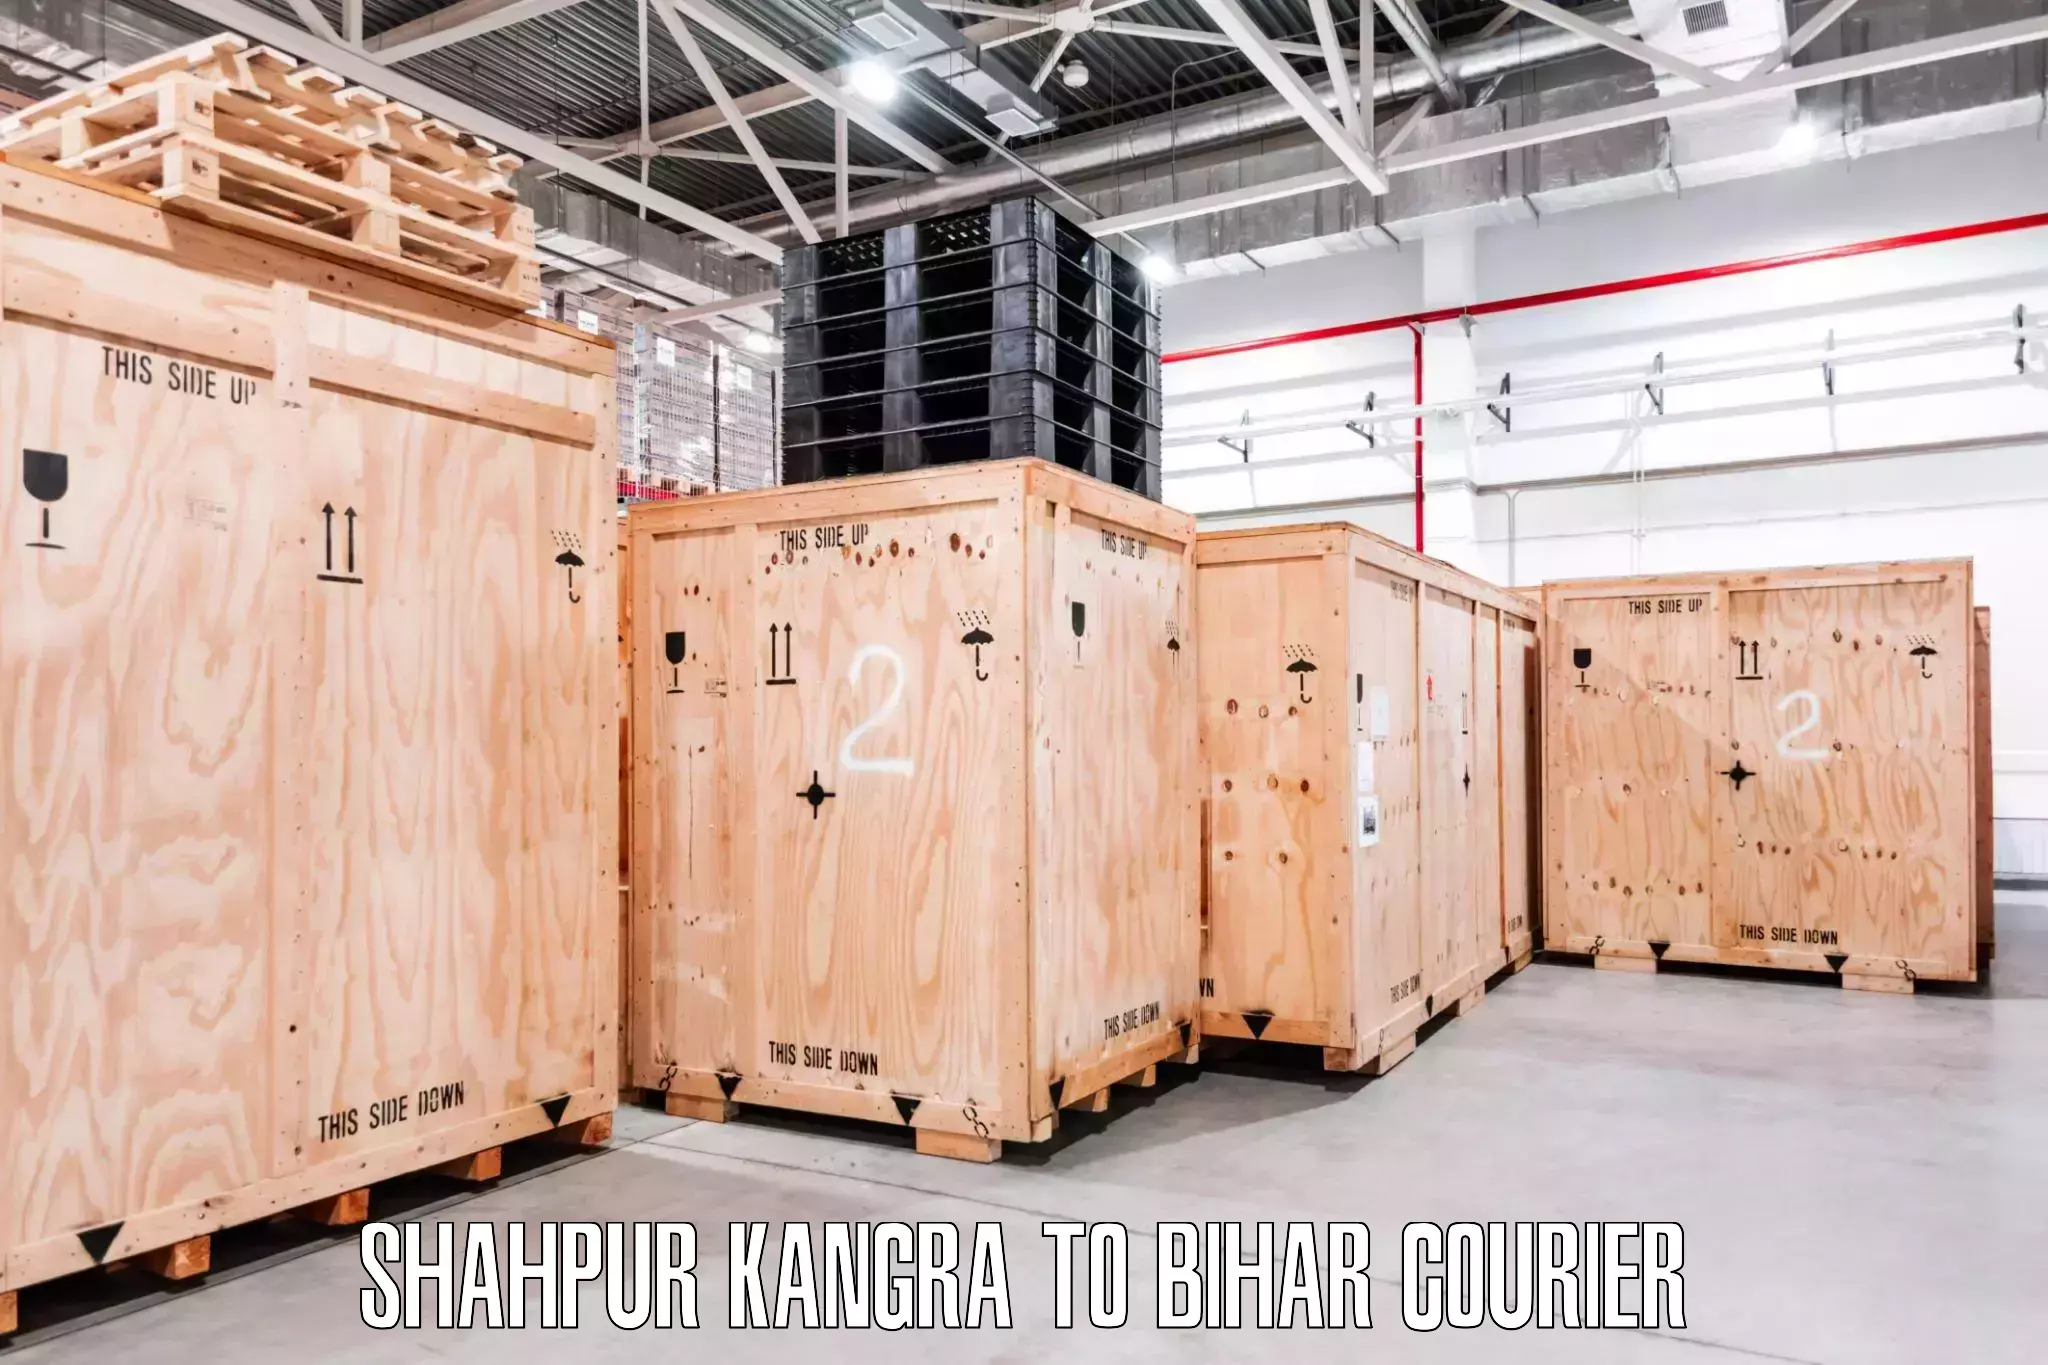 Moving and packing experts Shahpur Kangra to Mairwa